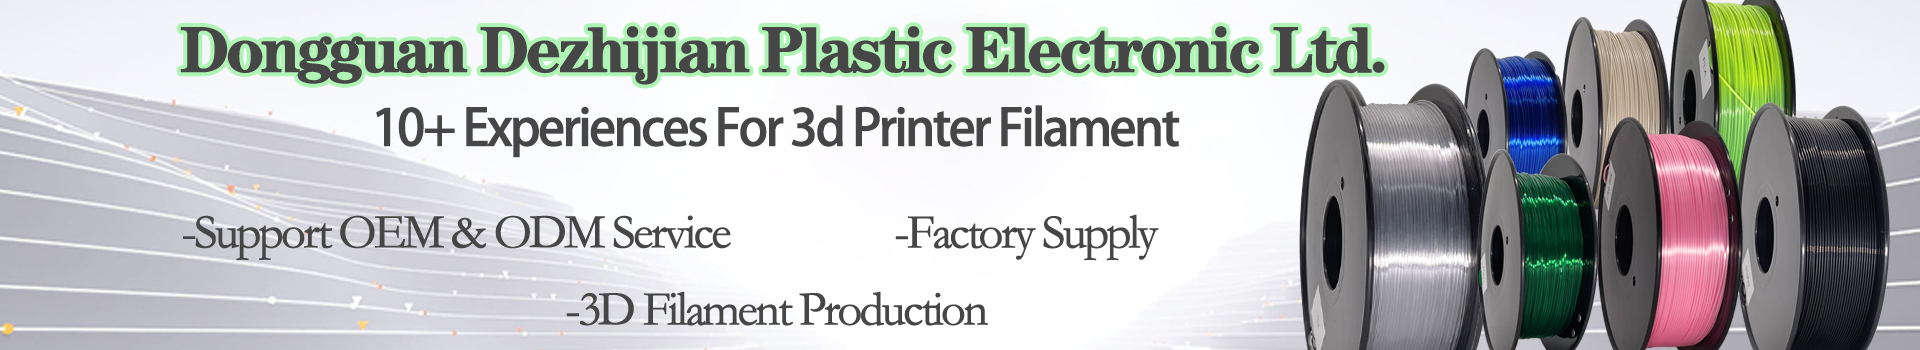 Pinrui 3D Imprimante de 1,75mm PLA SHINING SHININGER FILAMENT Filament pour imprimante 3D